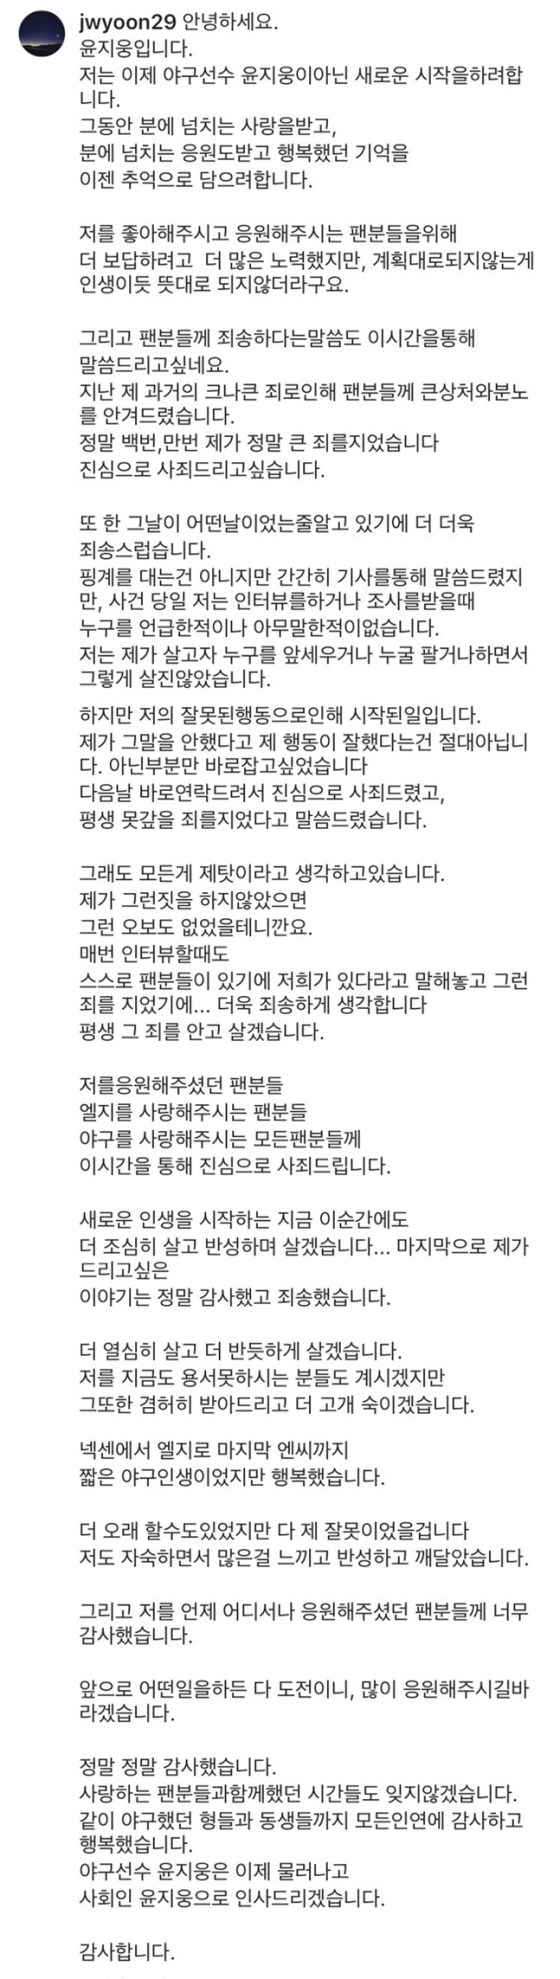 윤지웅 SNS 캡처.